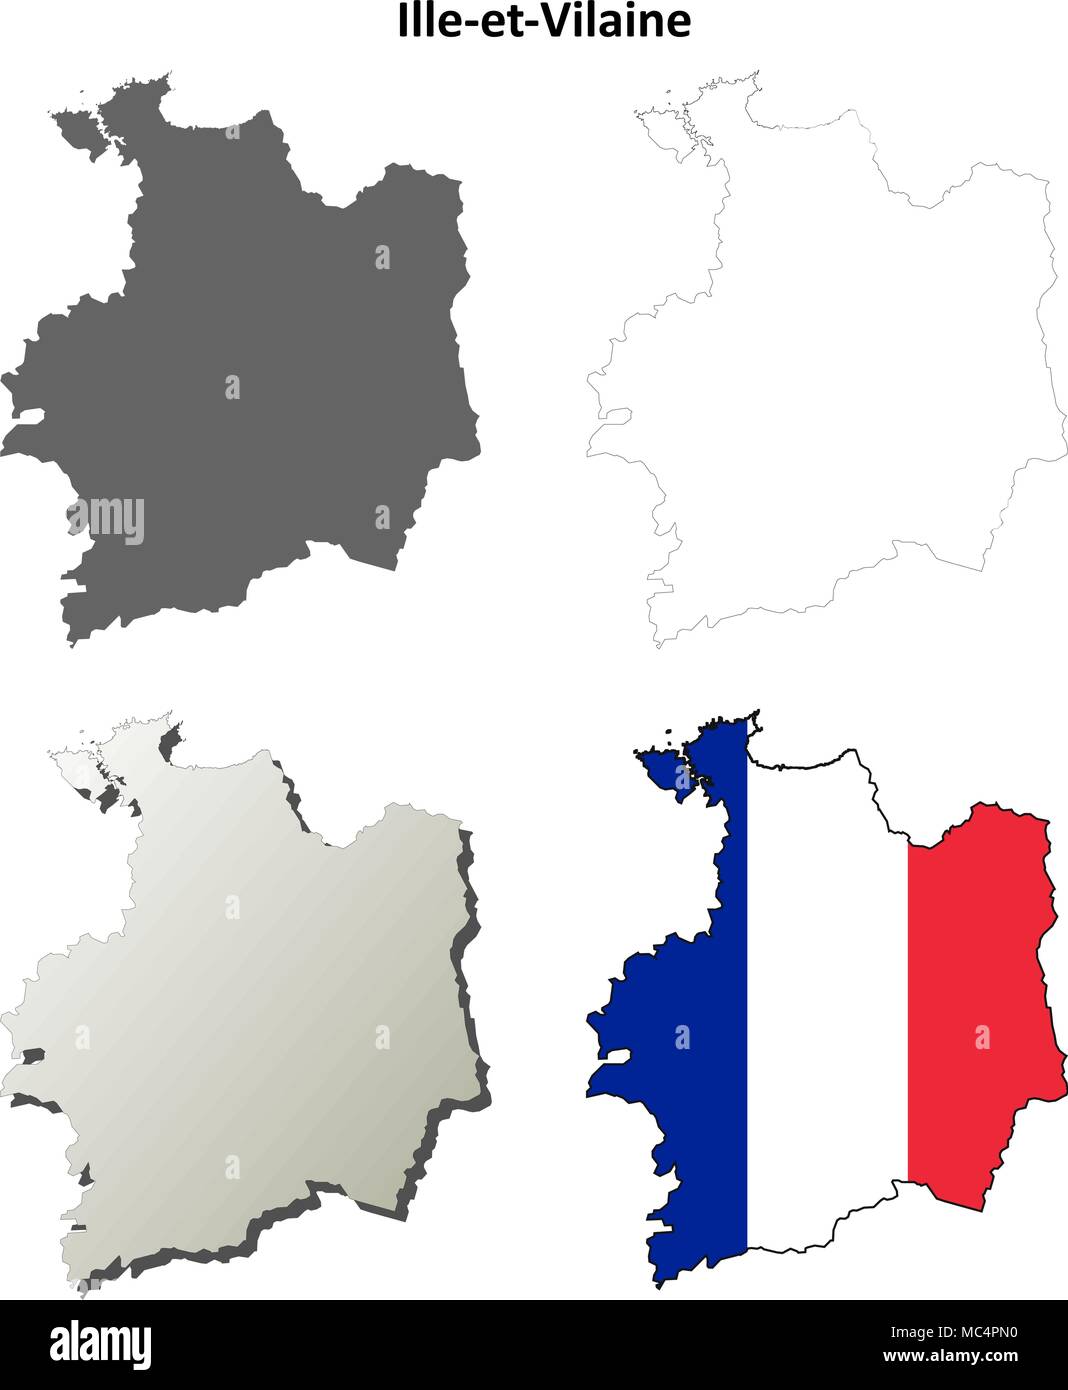 Ille-et-Vilaine, Bretagne carte contour défini Illustration de Vecteur